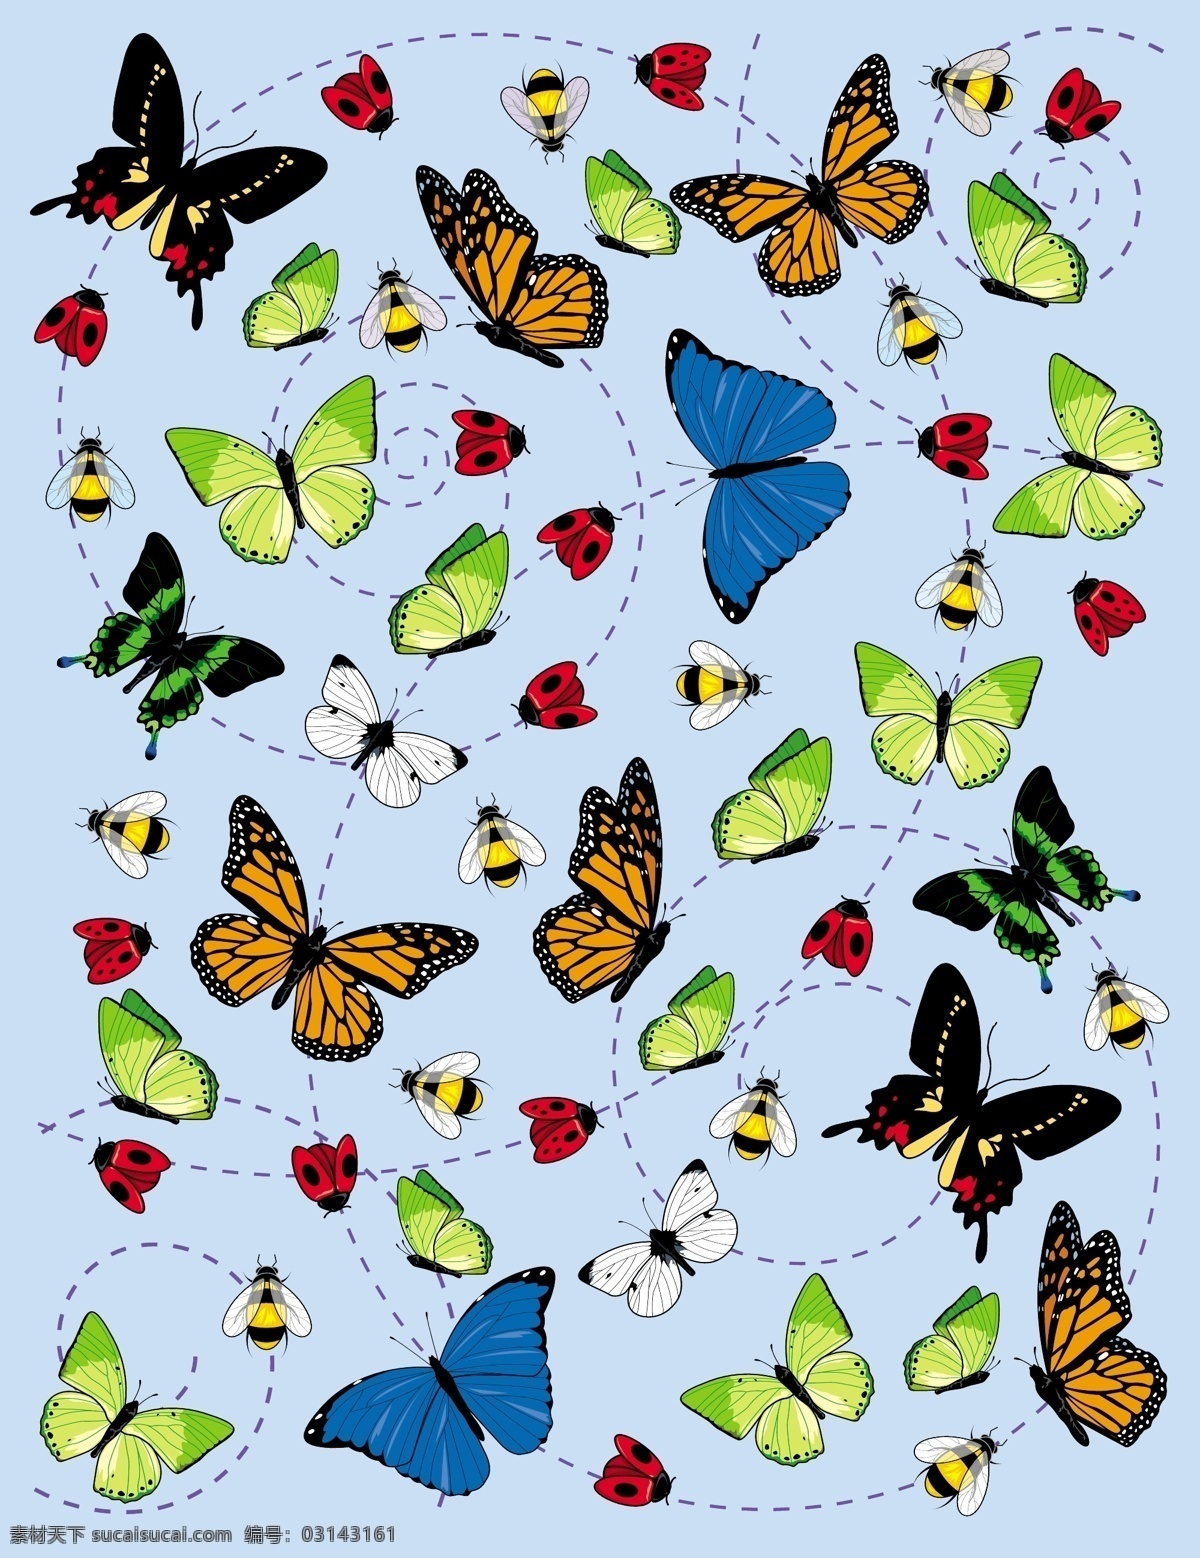 昆虫 蝴蝶 插画 矢量 矢量蝴蝶 矢量蜜蜂 漂亮蝴蝶 漂亮蜜蜂 矢量图 其他矢量图